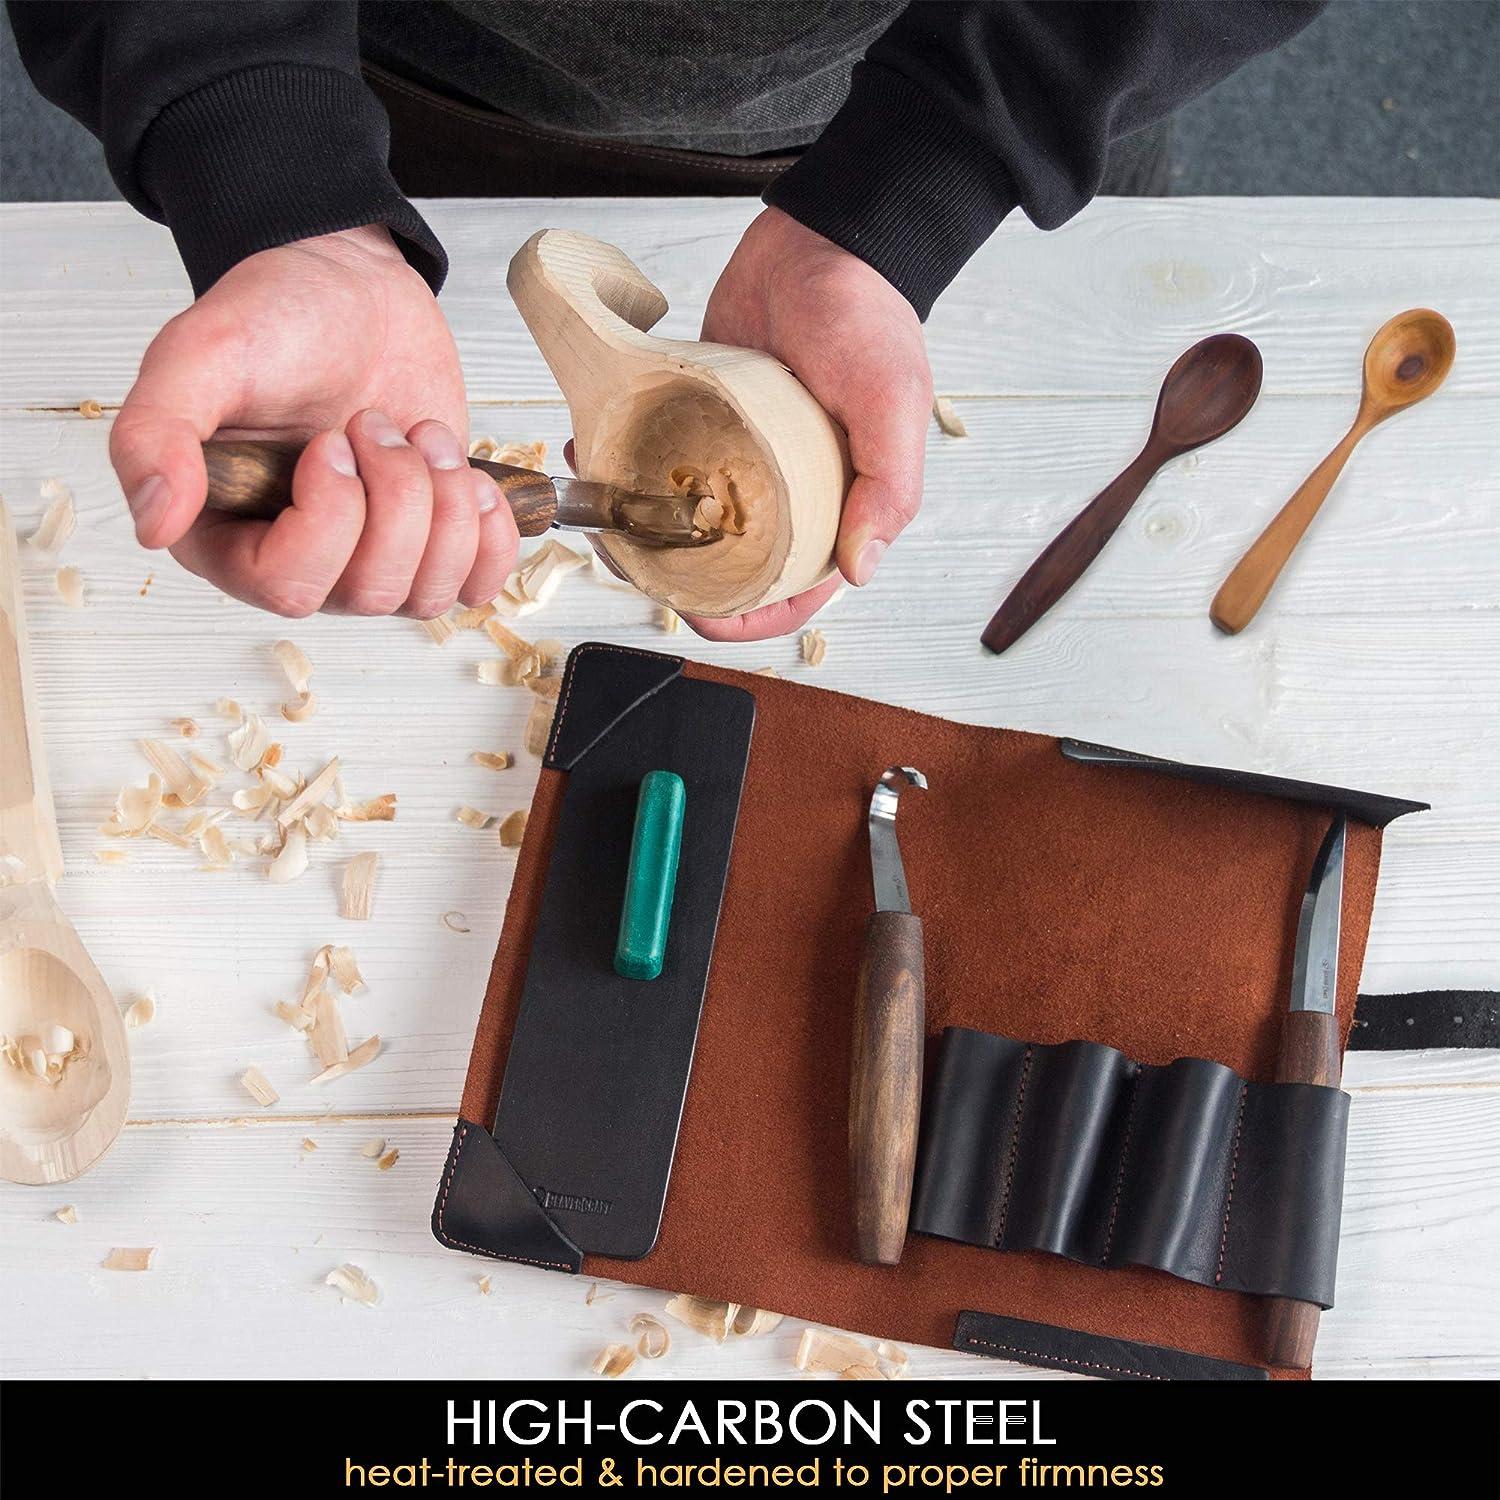 Deluxe Wood Carving Kit Whittling Kit Knife S50X Beavercraft 